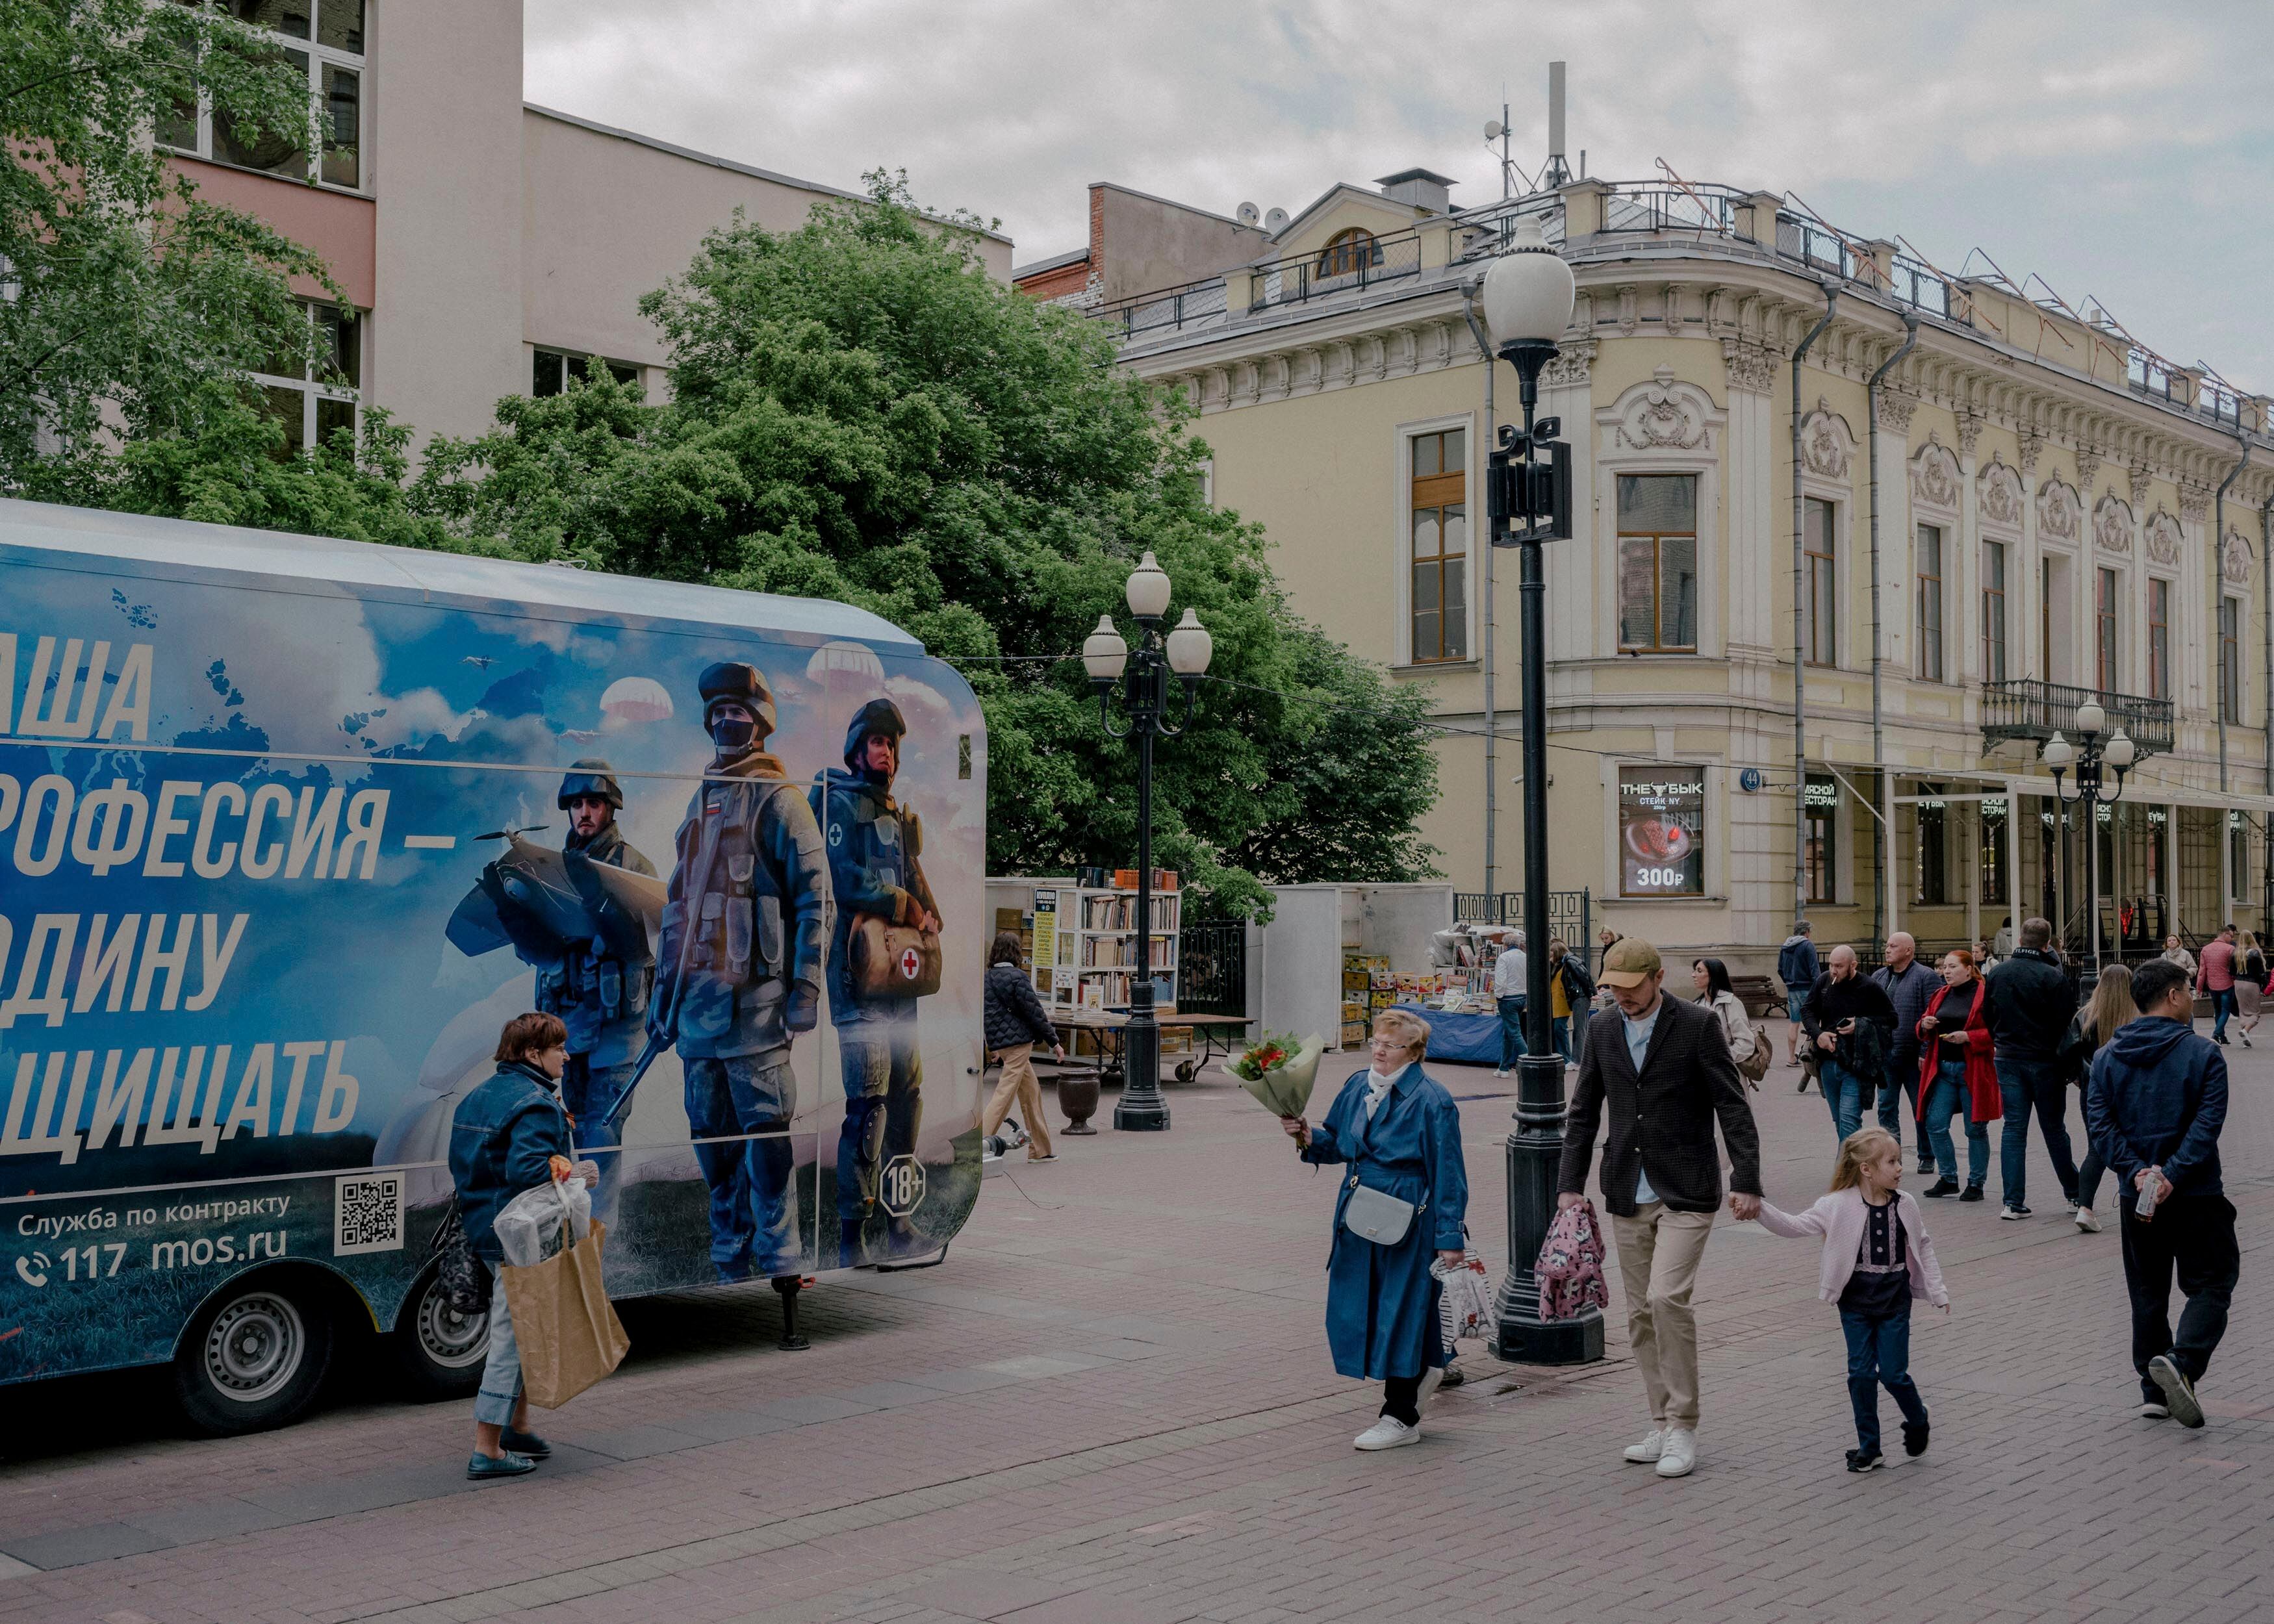 Varios peatones pasan junto a un autobús militar de reclutamiento en el centro de Moscú (Nanna Heitmann/The New York Times)